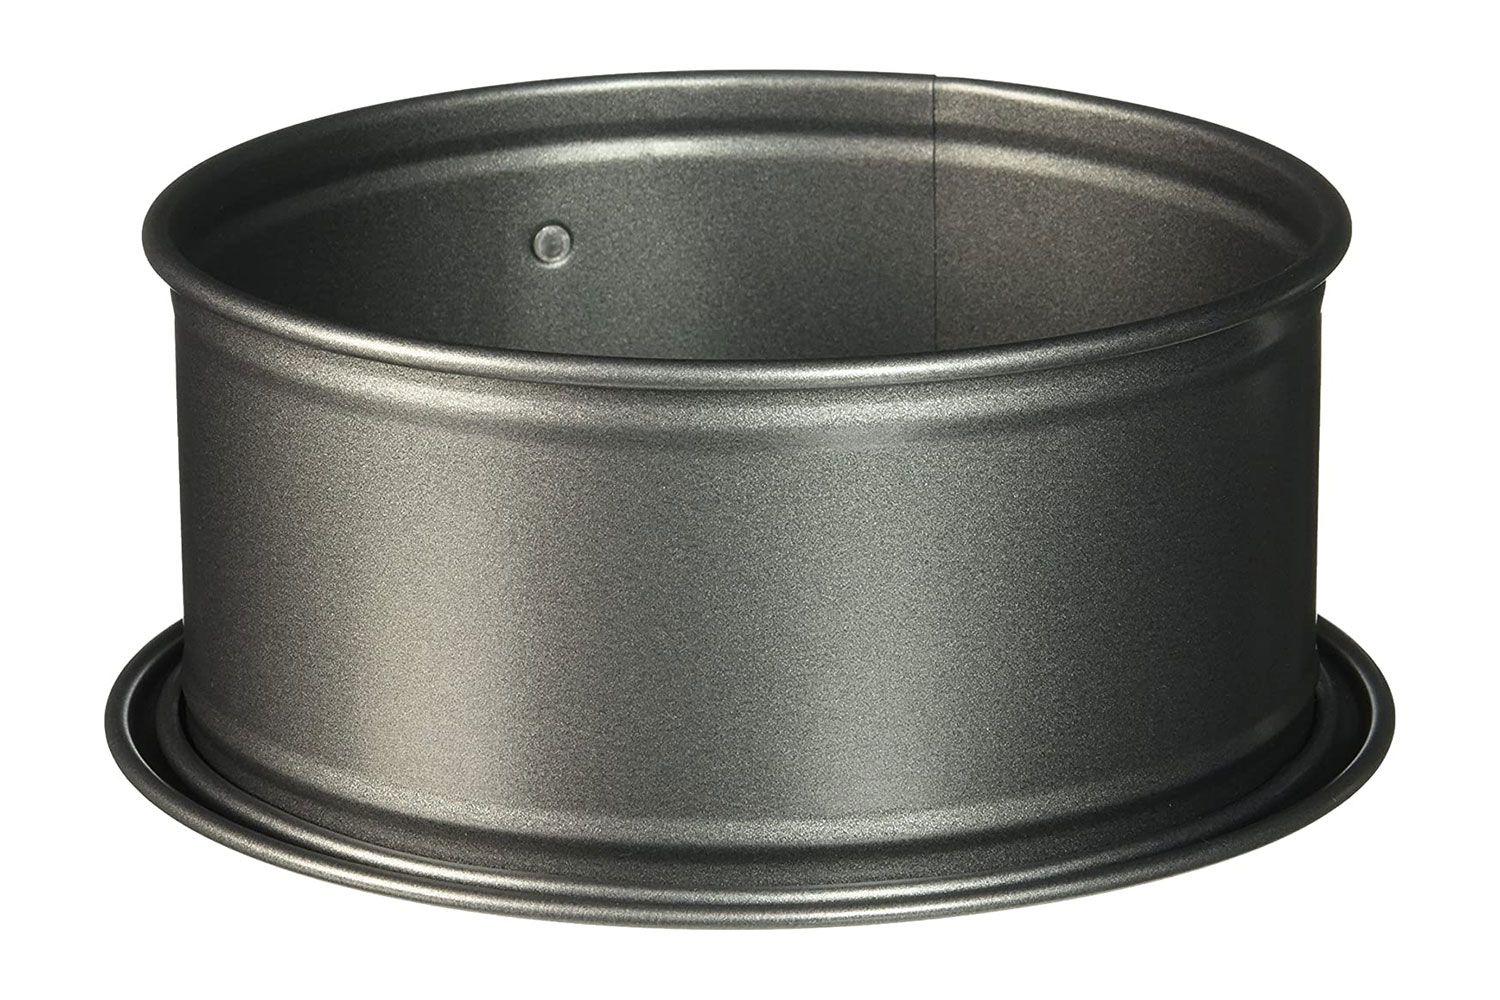 Springform 7 inch Pan by Nordic Ware